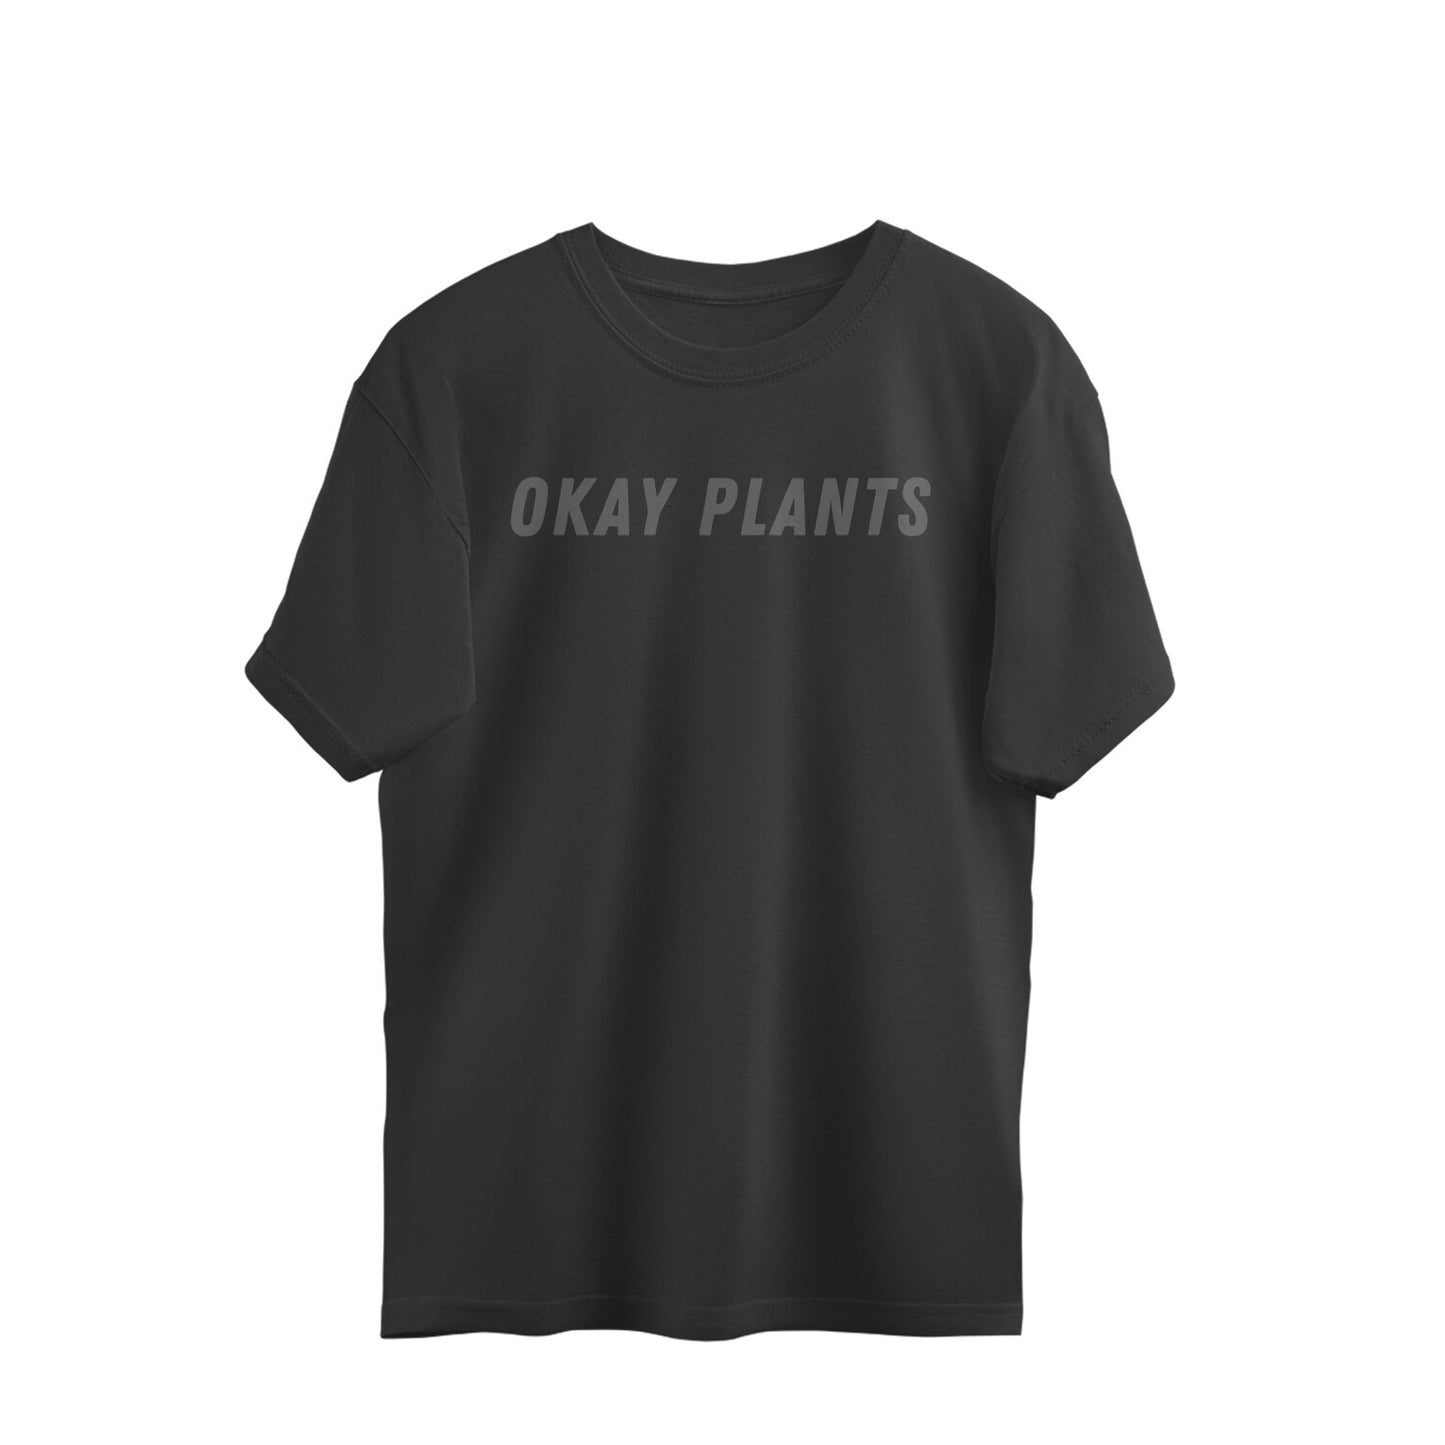 Okay Plants - Unisex Oversized T-shirts